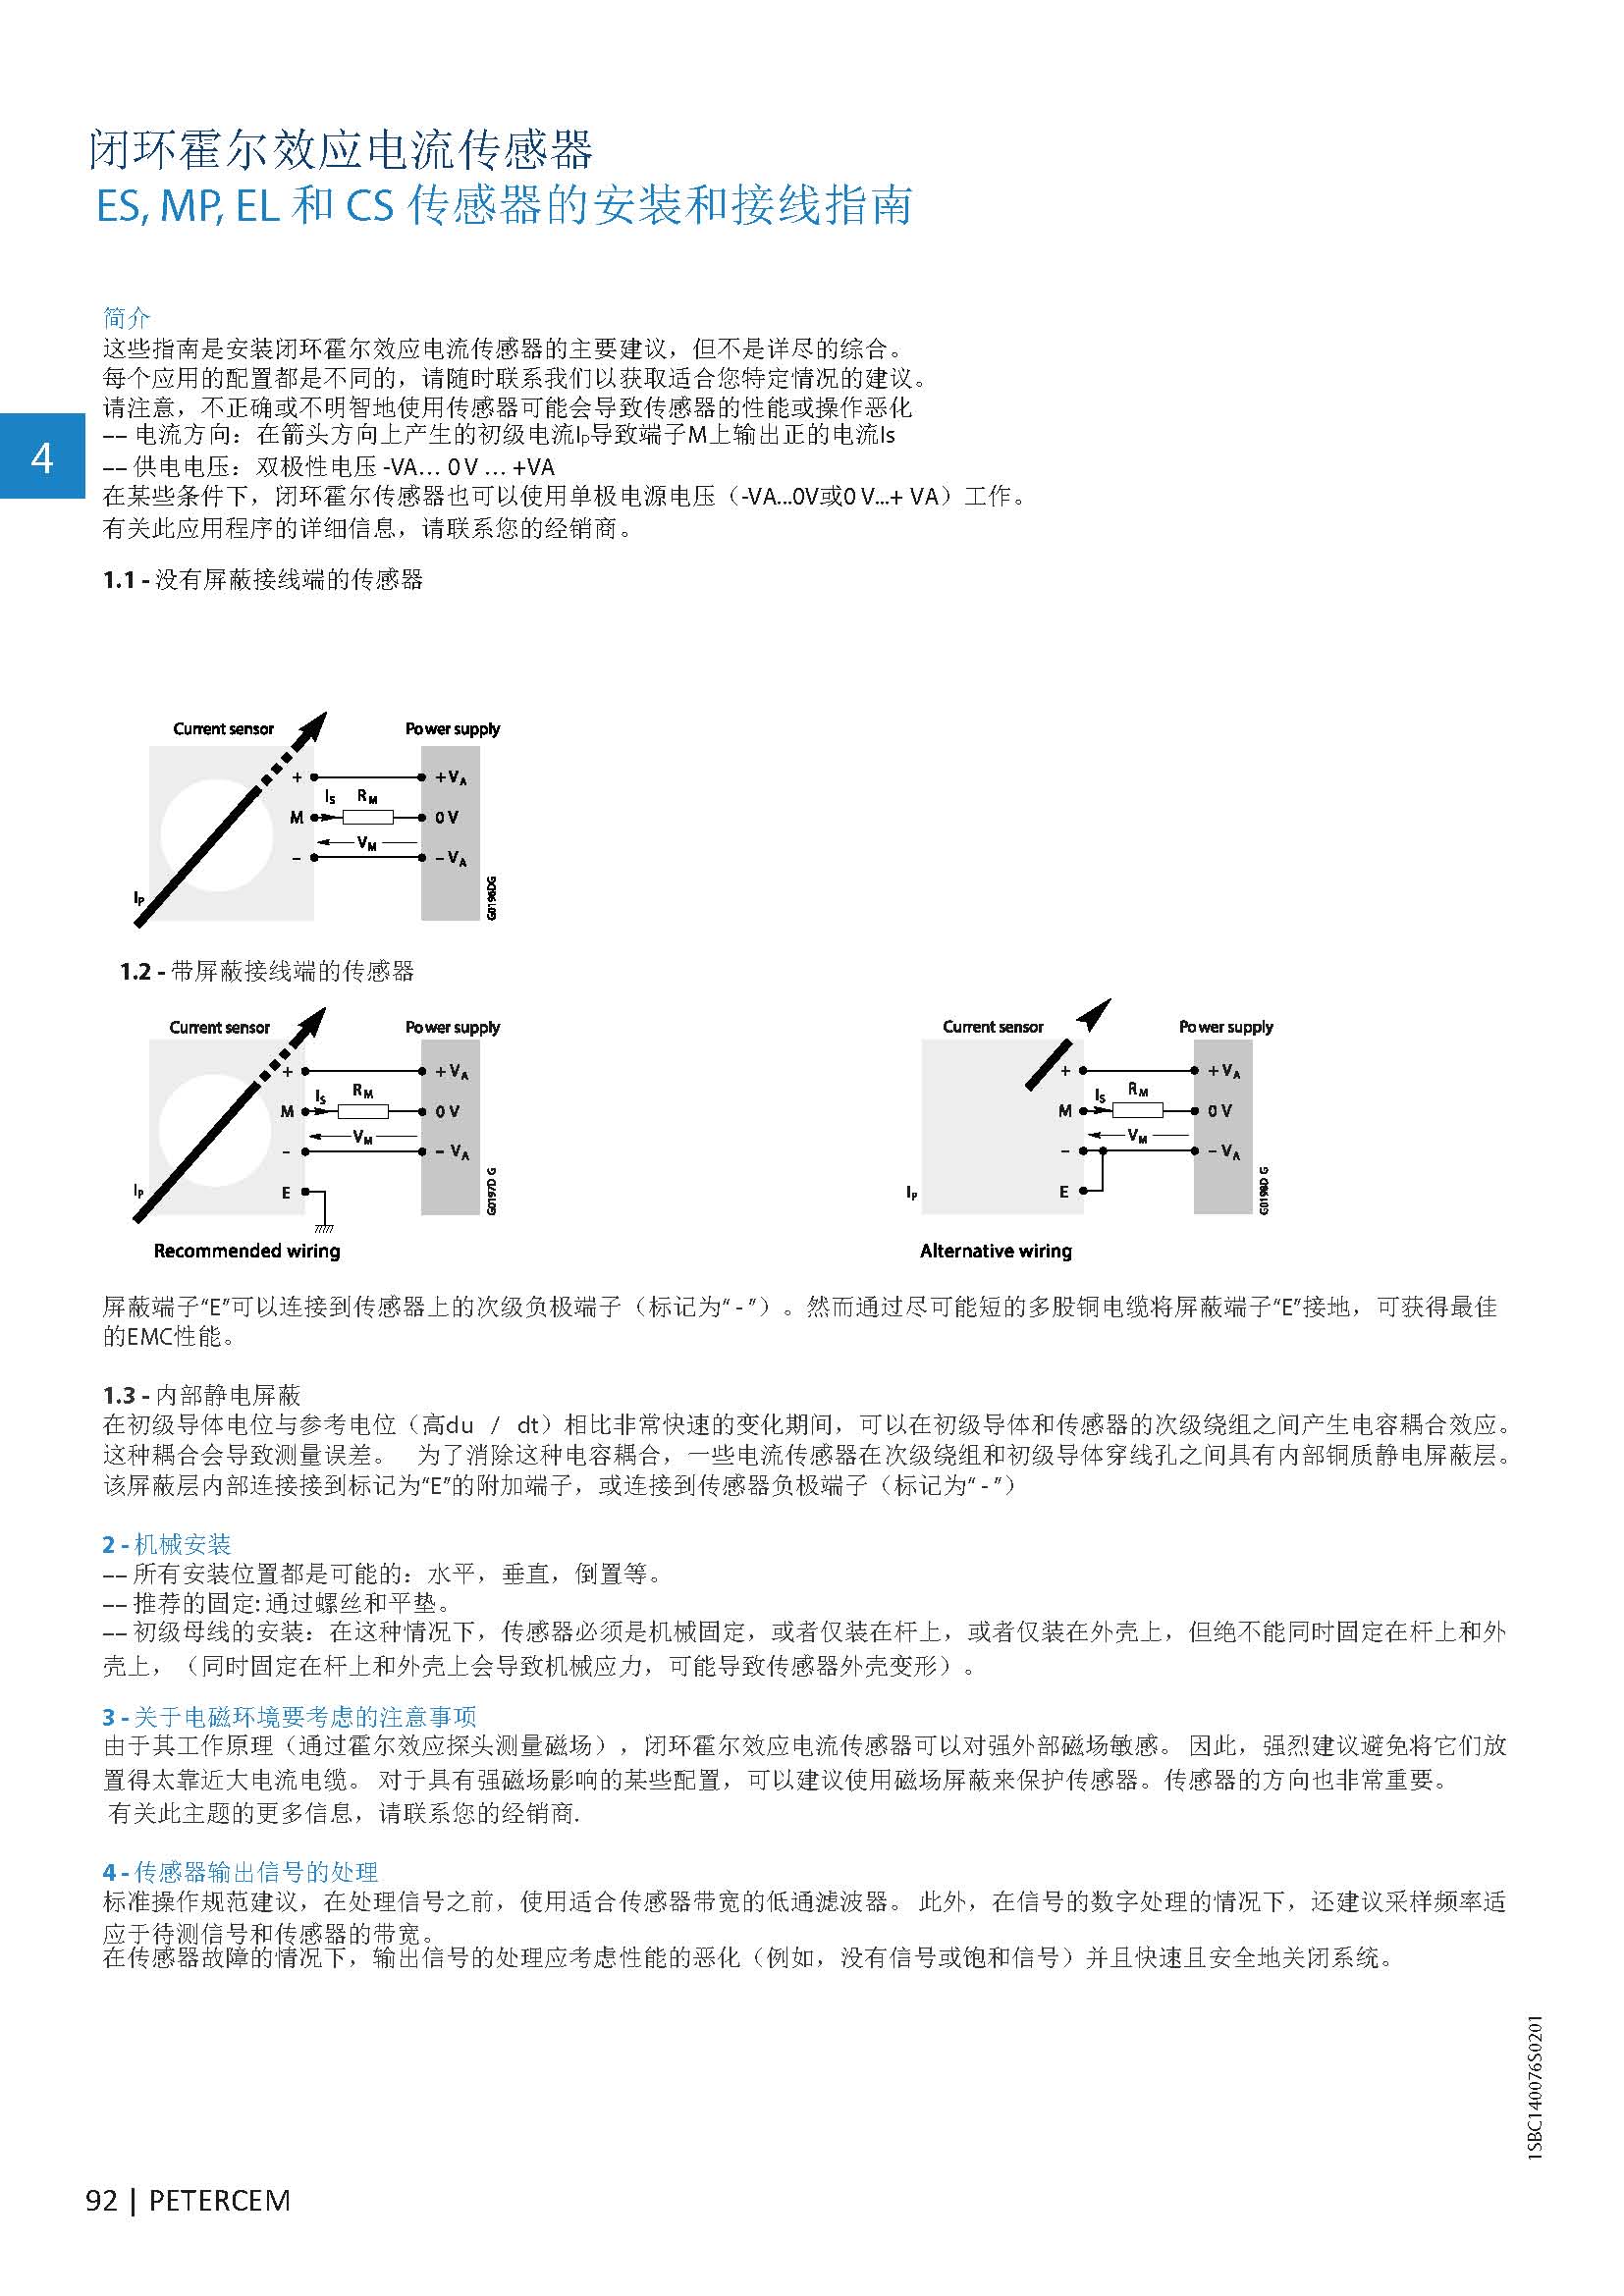 页面提取自－PETERCEM电压电流传感器中文样本.jpg